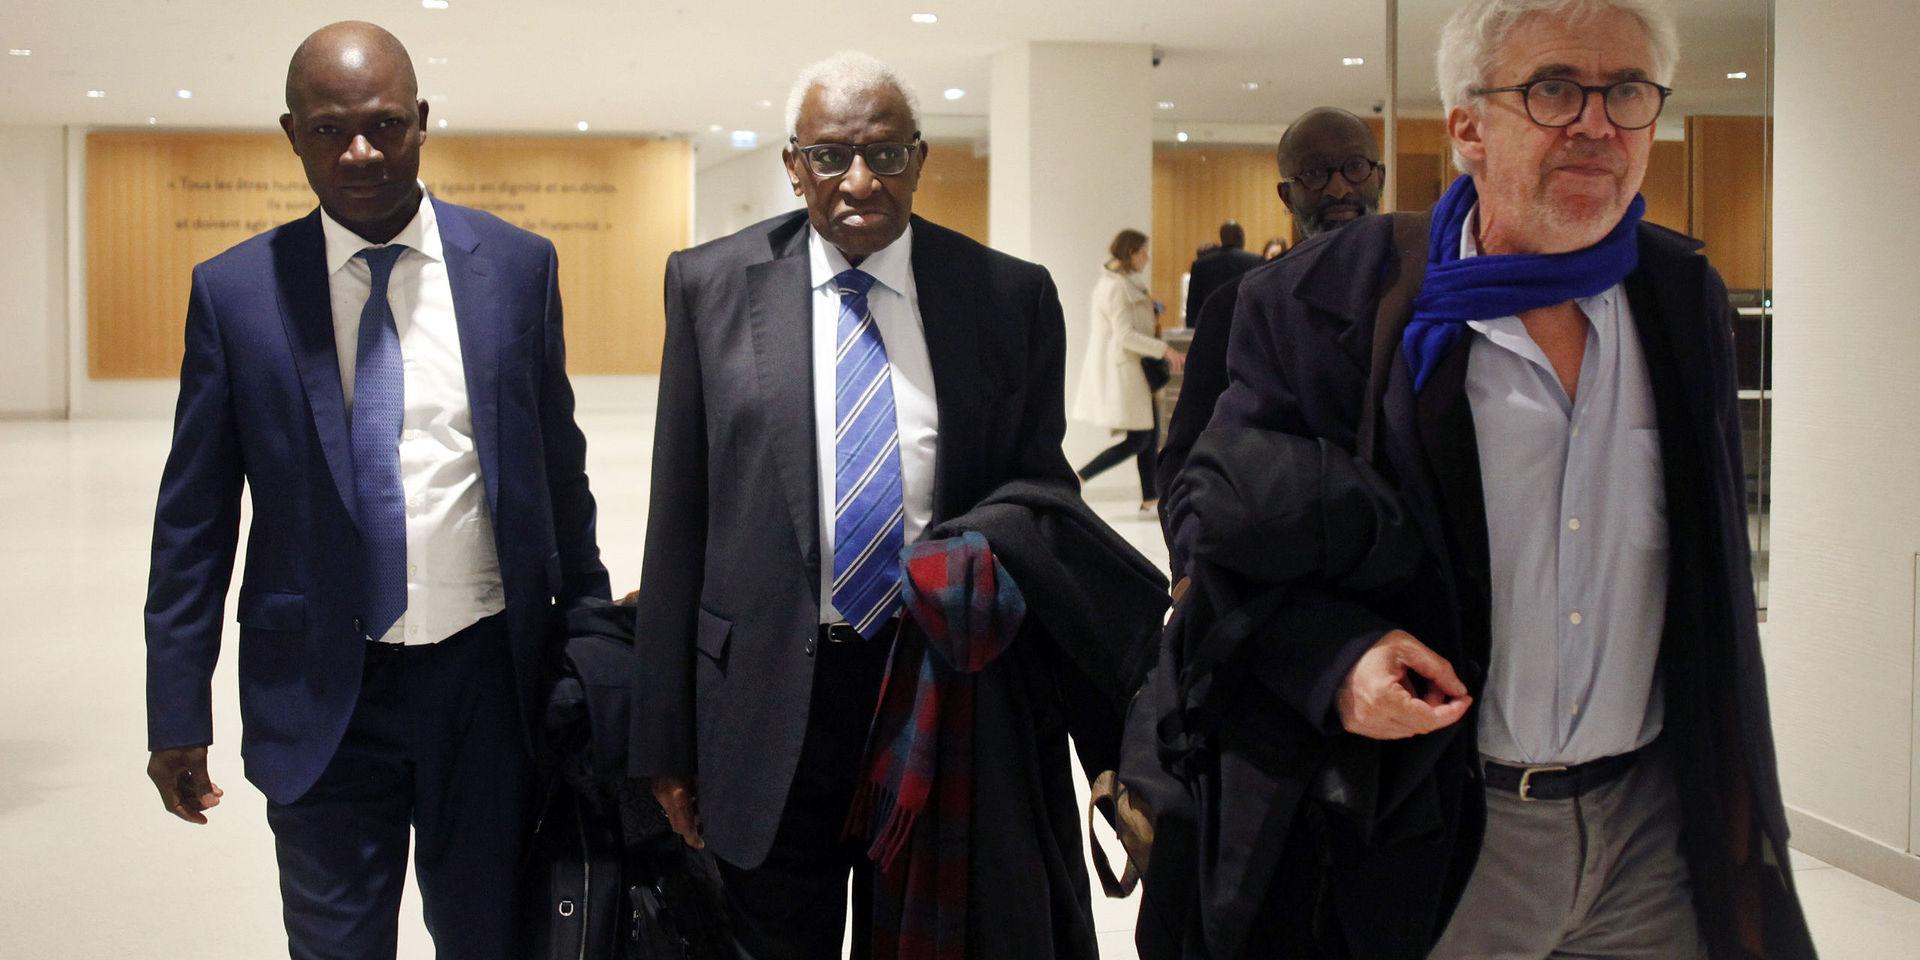 Lamine Diack, i mitten, på väg in till rättegången i Paris i januari – som flyttades och ska inledas på måndag.